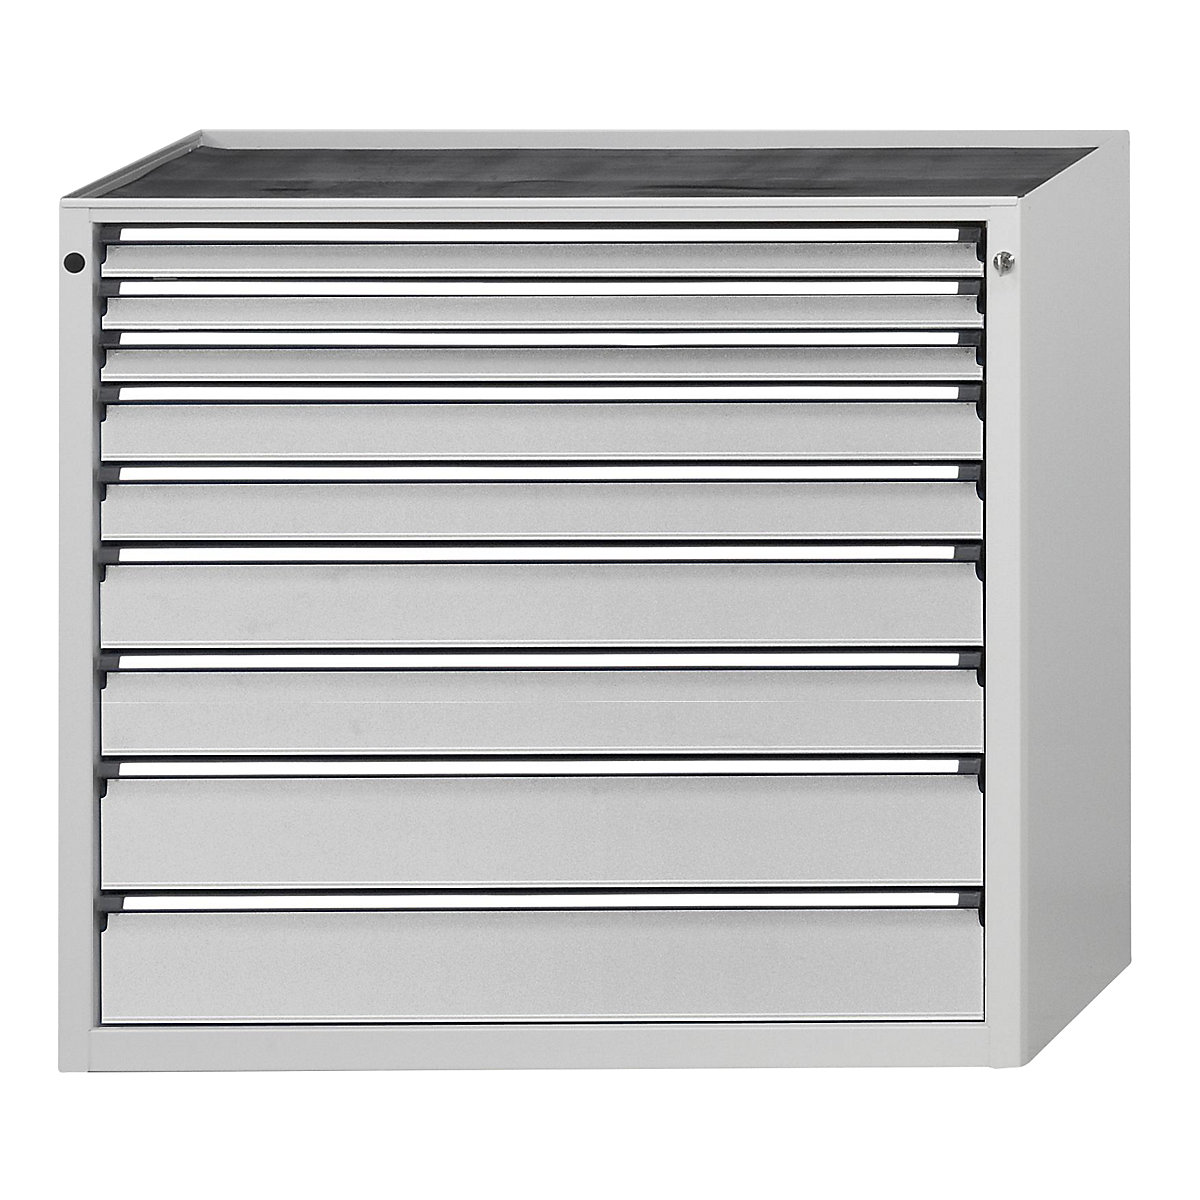 ANKE – Armoire à tiroirs, l x p 1060 x 675 mm, 9 tiroirs, hauteur 980 mm, façade gris clair